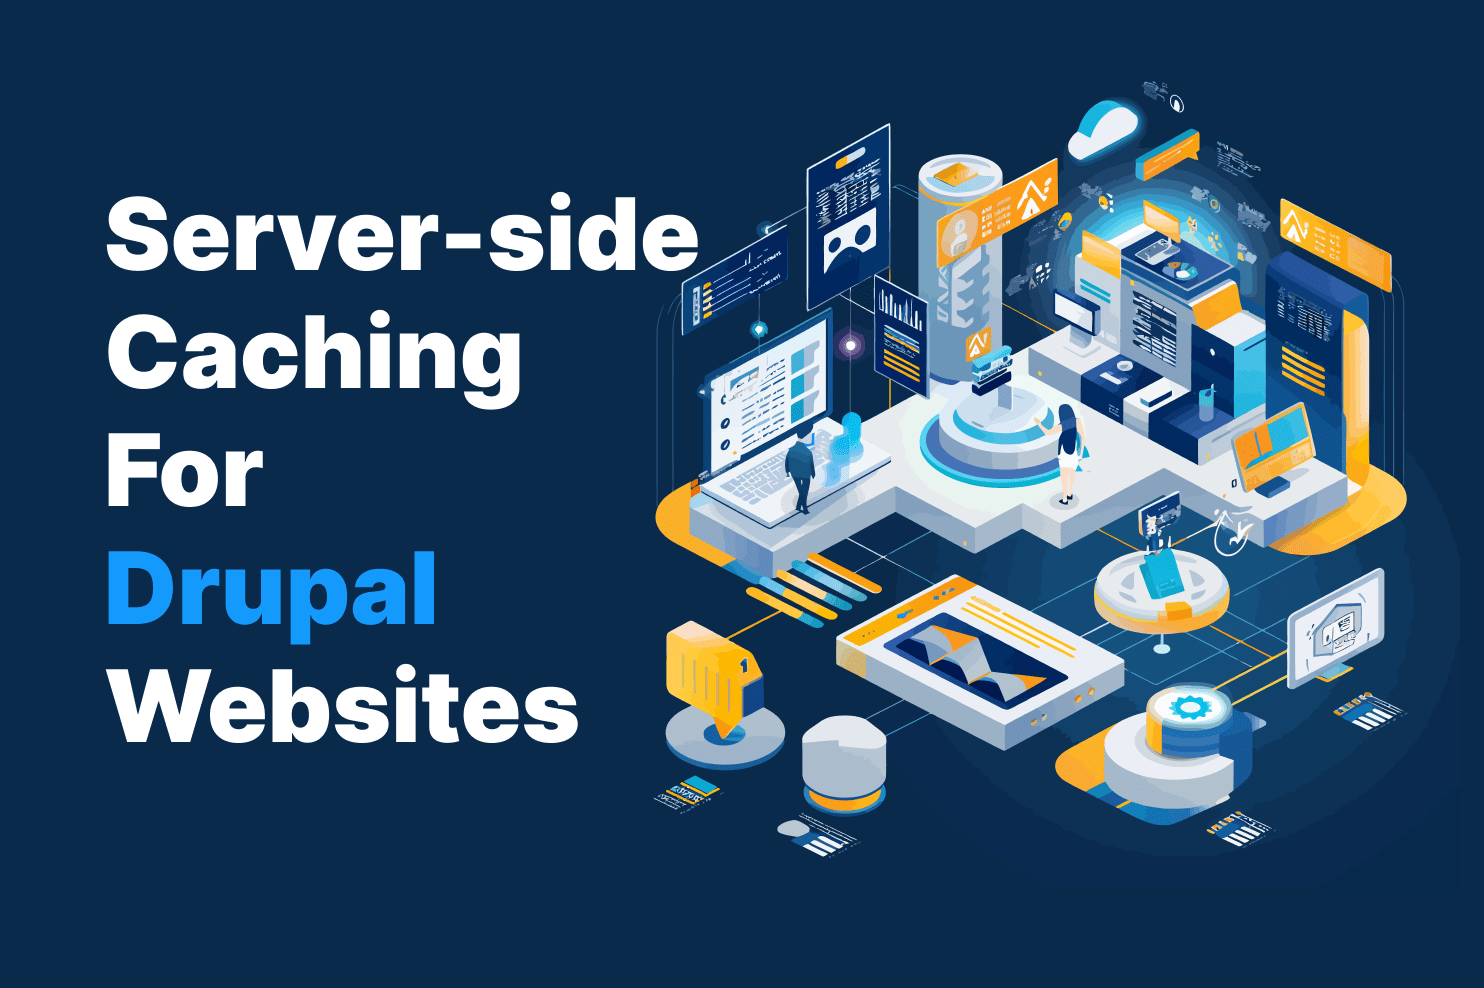 Server-side Caching for Drupal Websites image